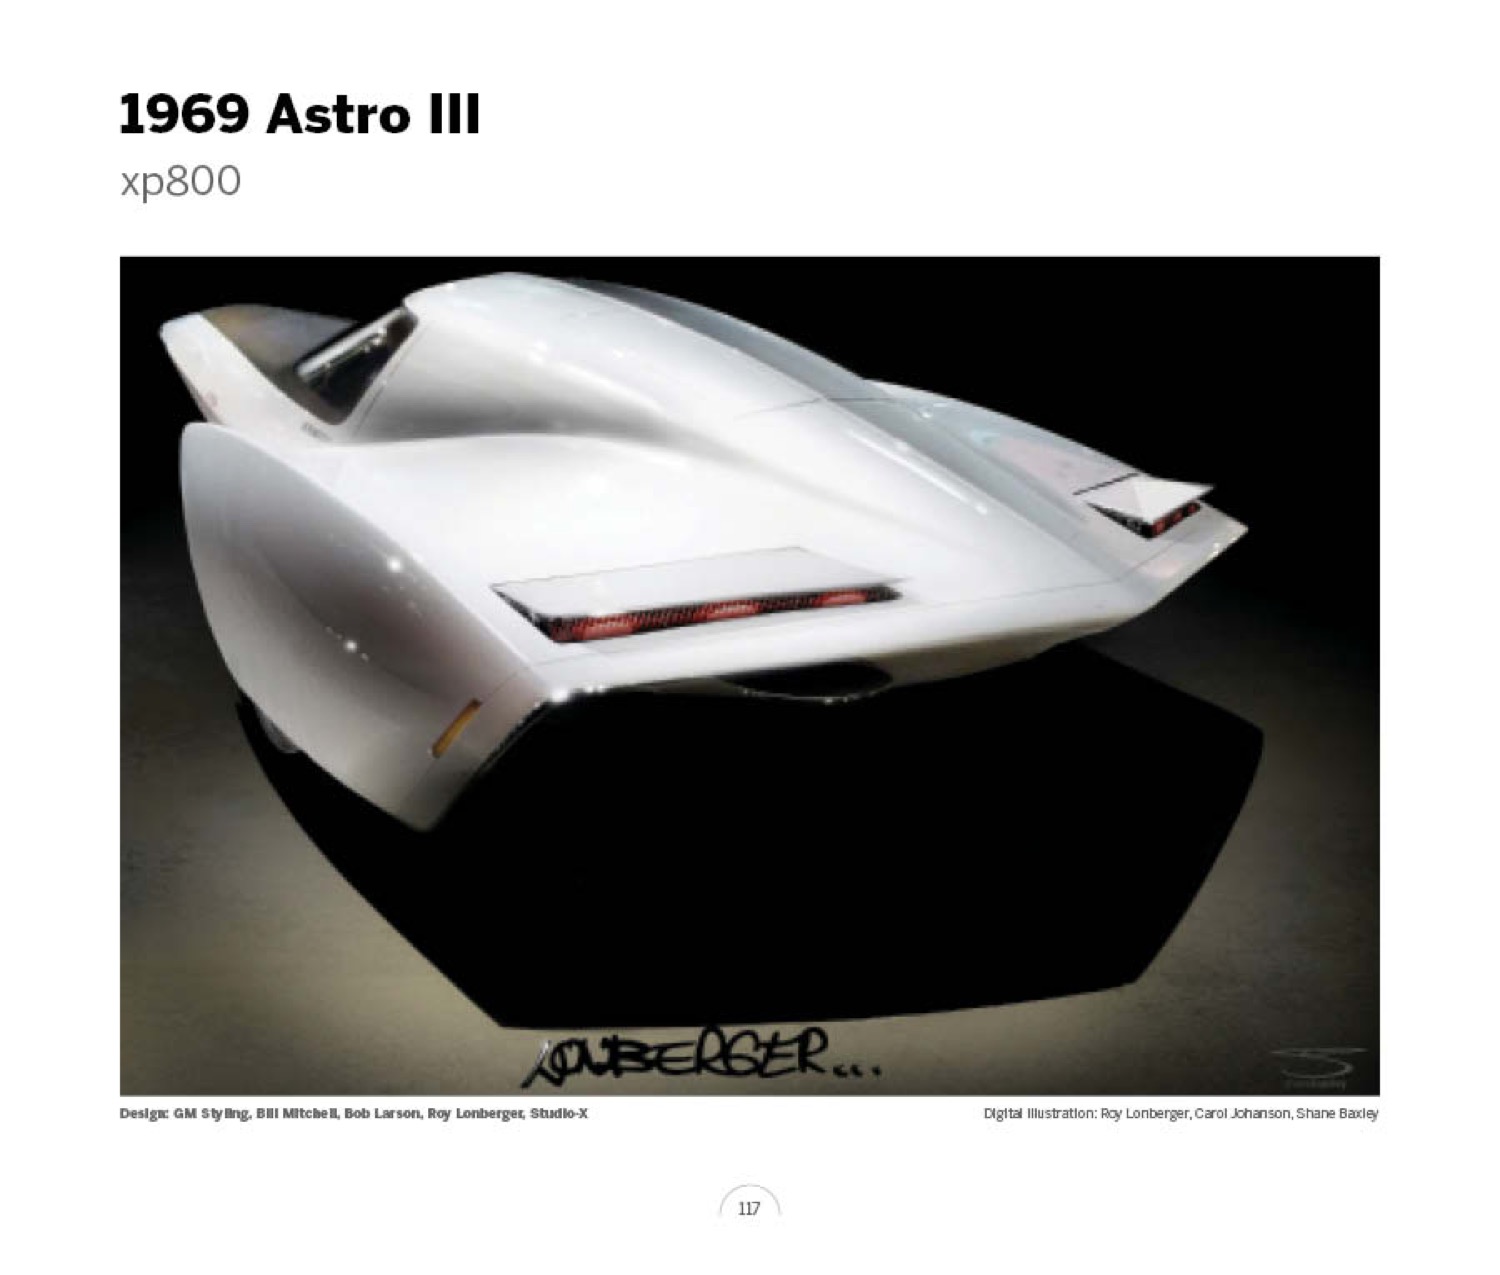 (11) 1969 Astro III xp800 LoRez.jpg